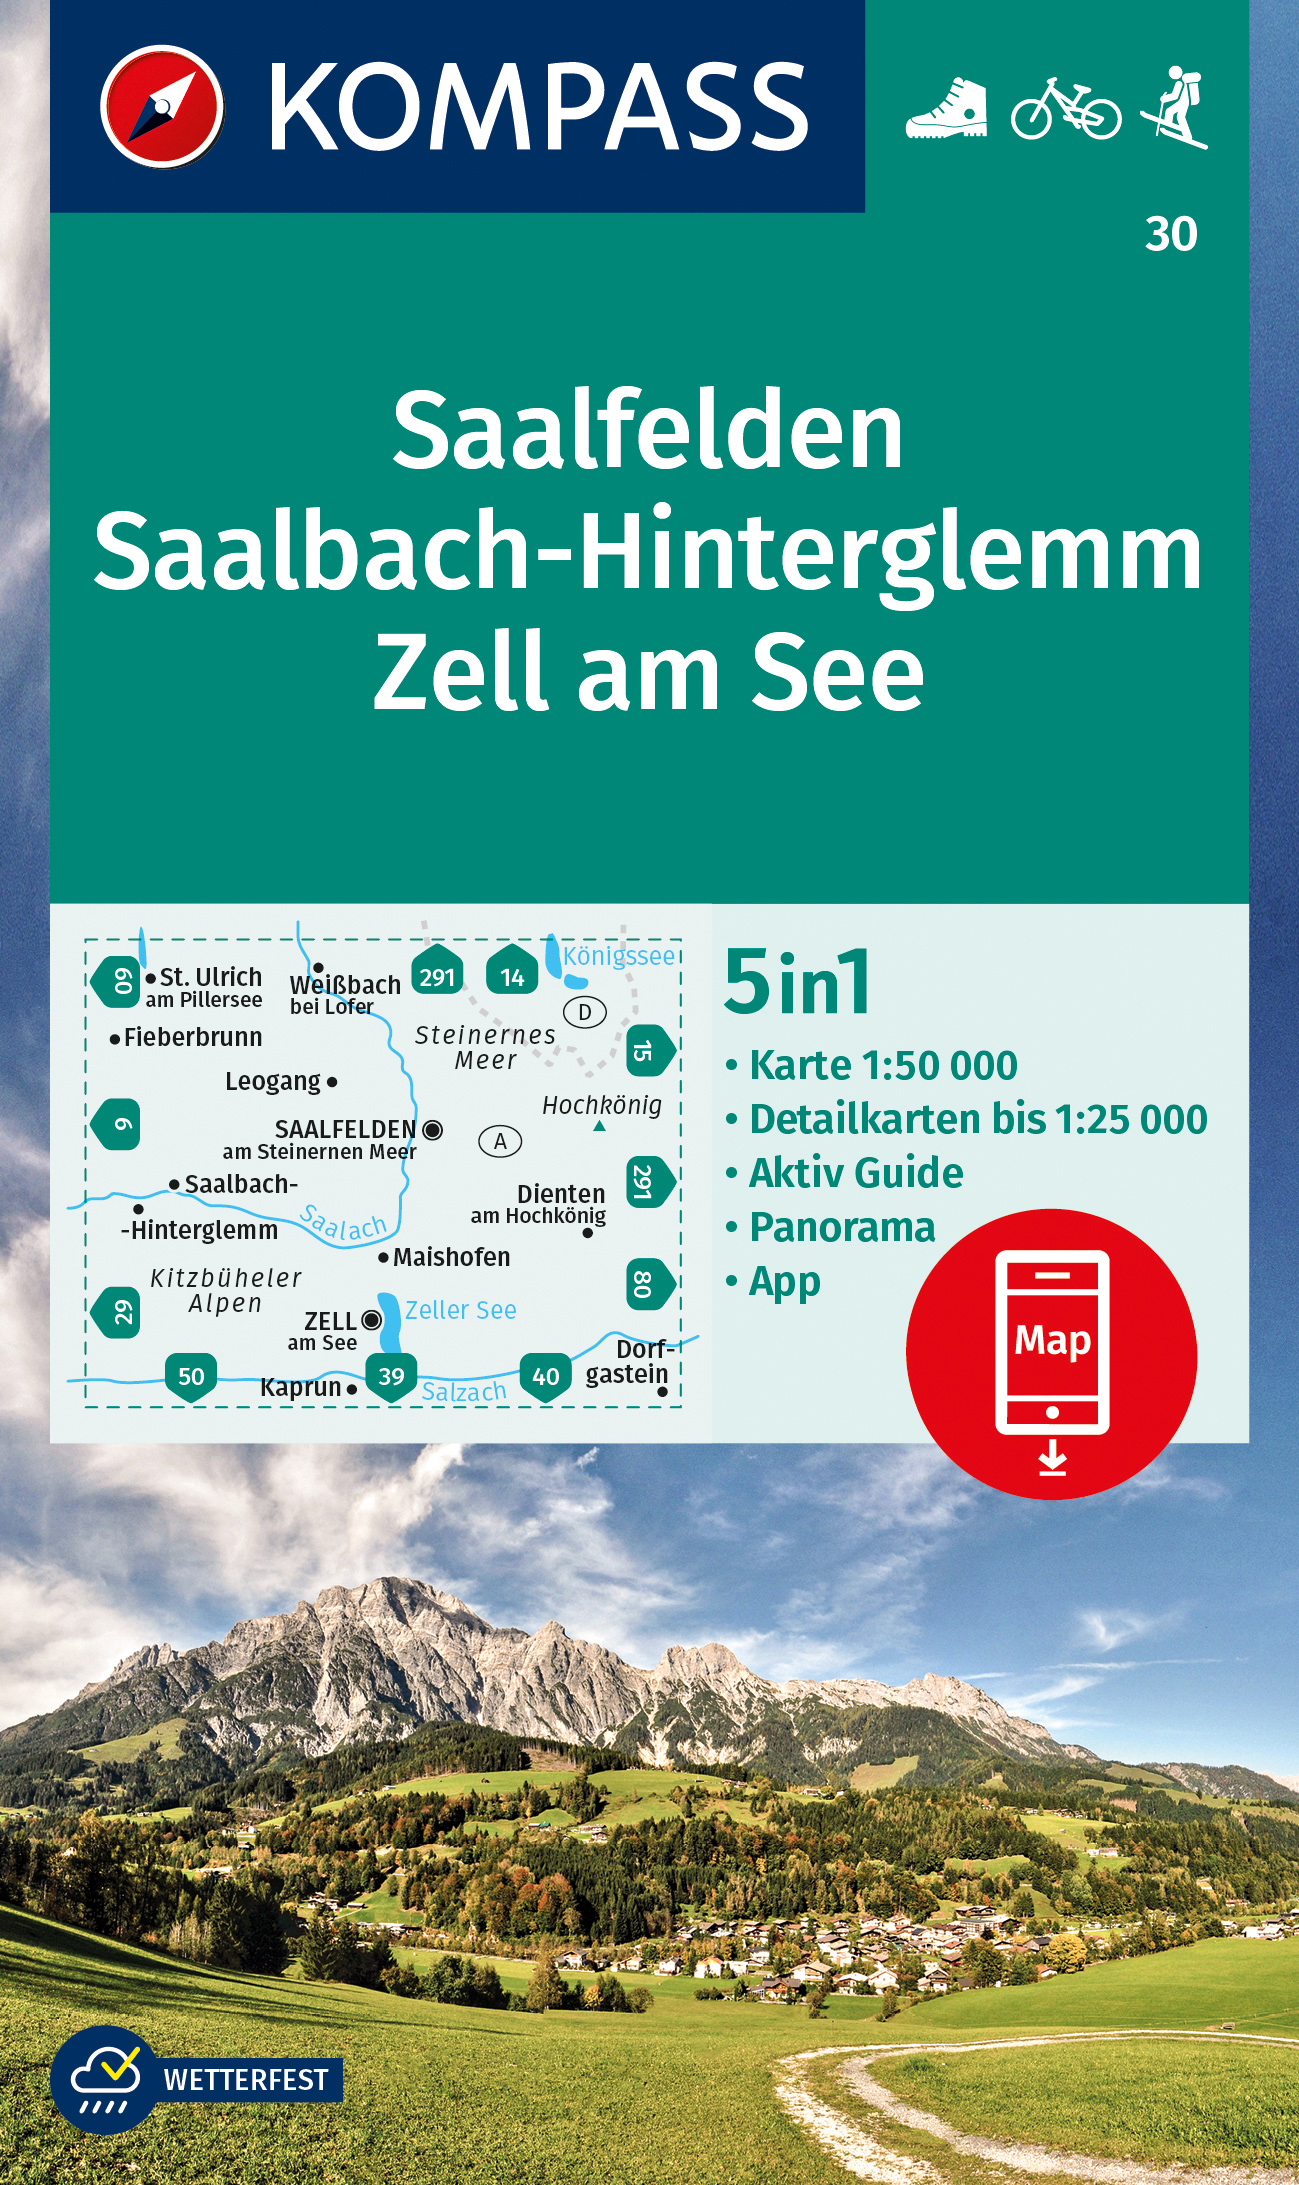 Saalfelden, Saalbach, Hinterglemm, Zell am See (Kompass - 30) - turistická mapa